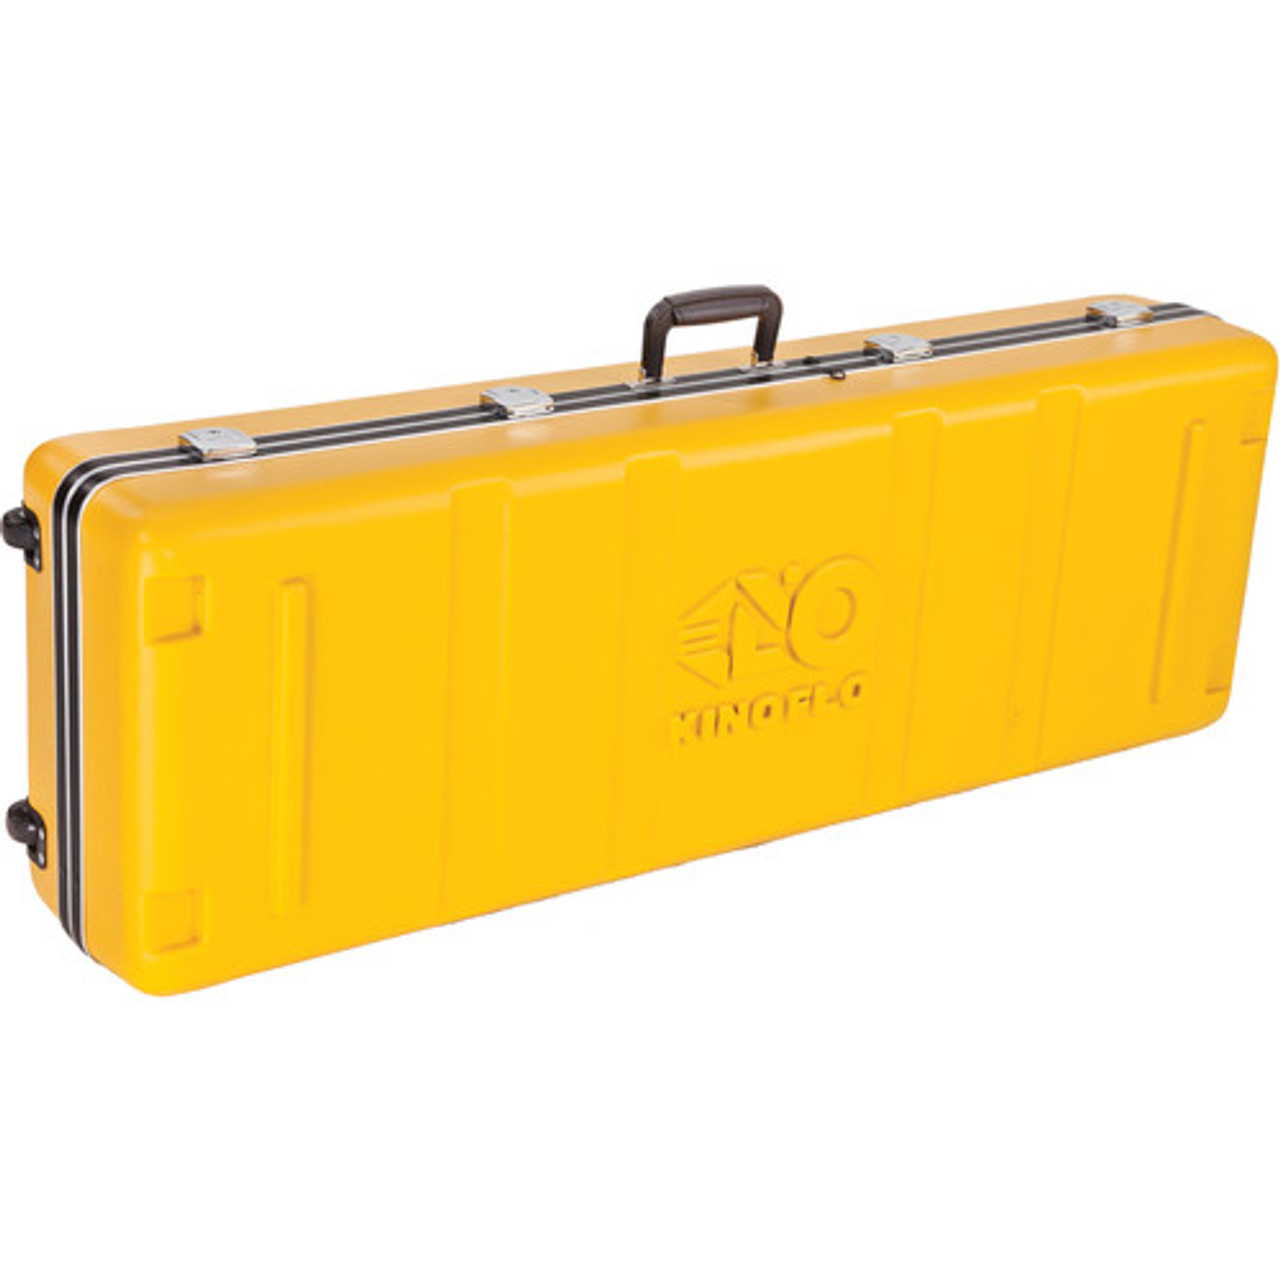 Kino Flo Freestyle T44 Travel Case (Yellow) (KAS-FT44C)